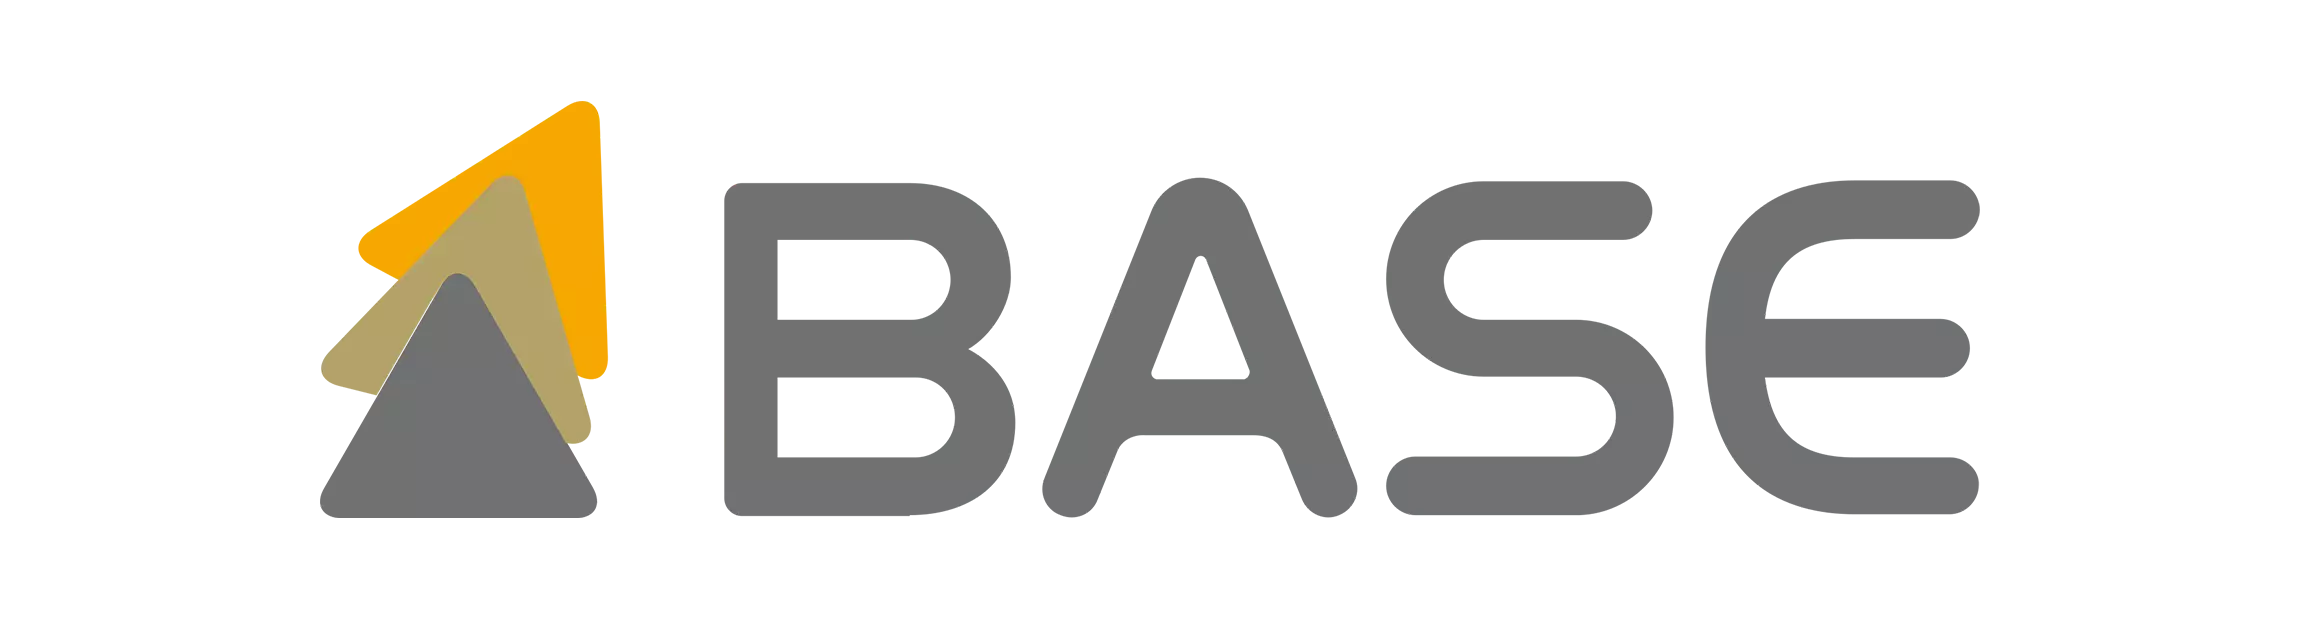 banco_base